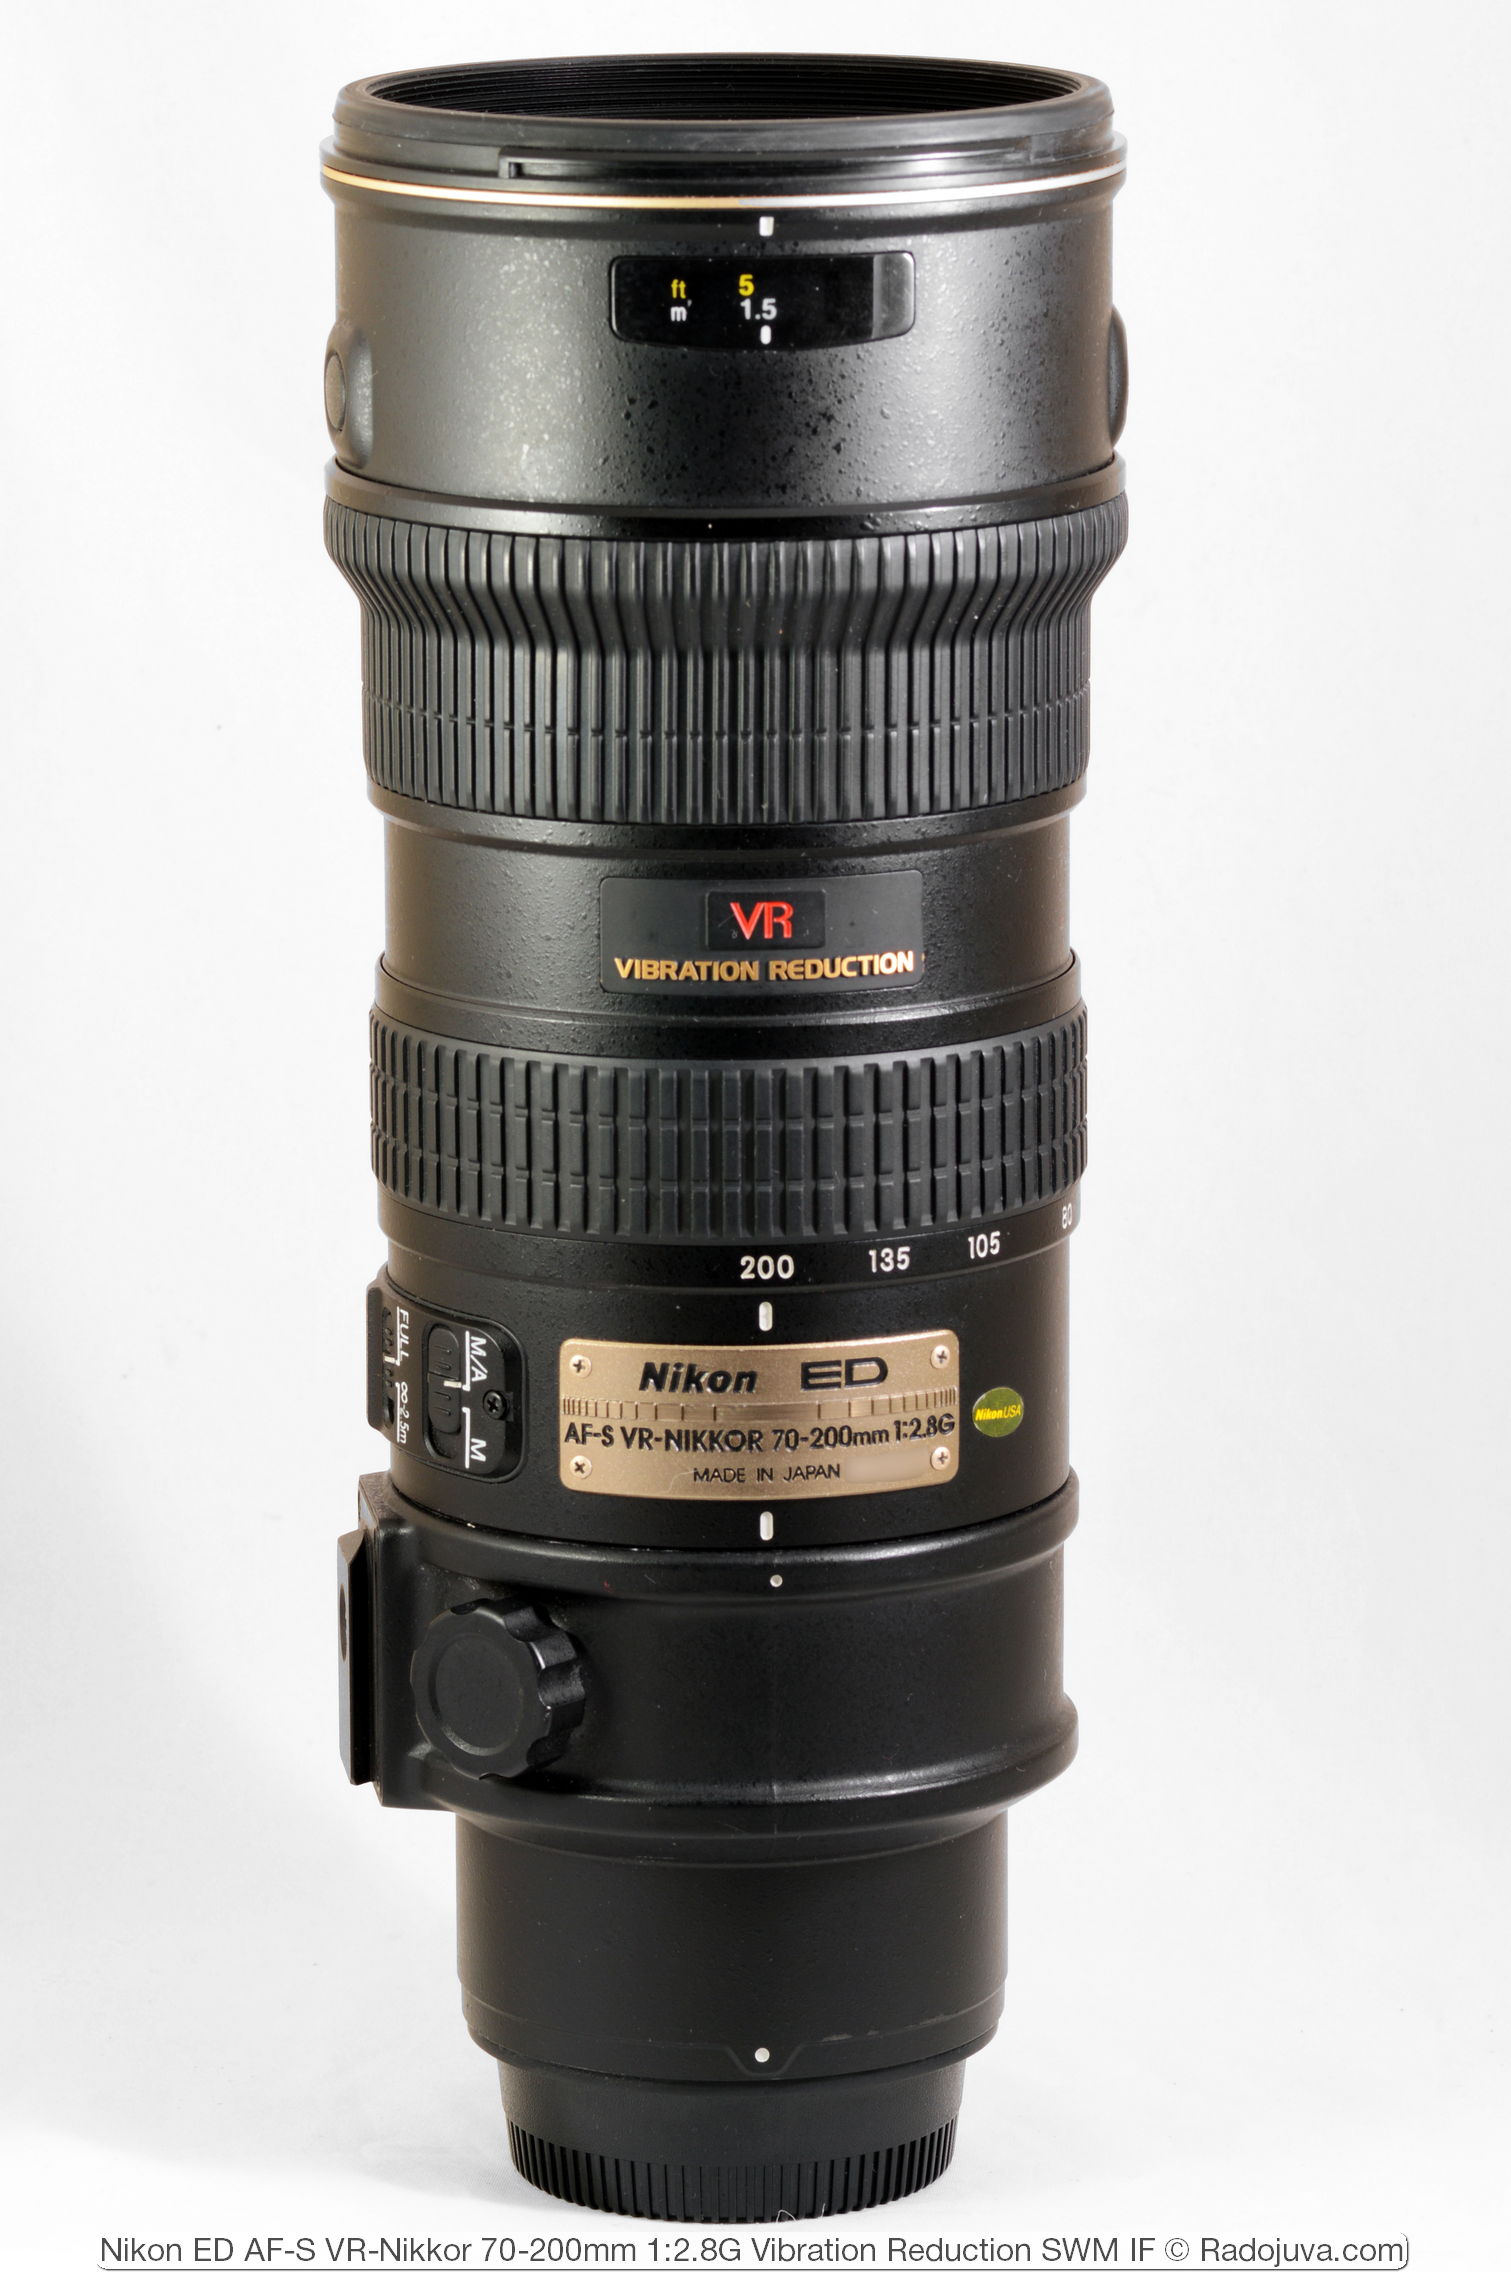 onderwijzen Beoordeling tekort Review of Nikon ED AF-S VR-Nikkor 70-200mm 1: 2.8G (VR1) | Radozhiva